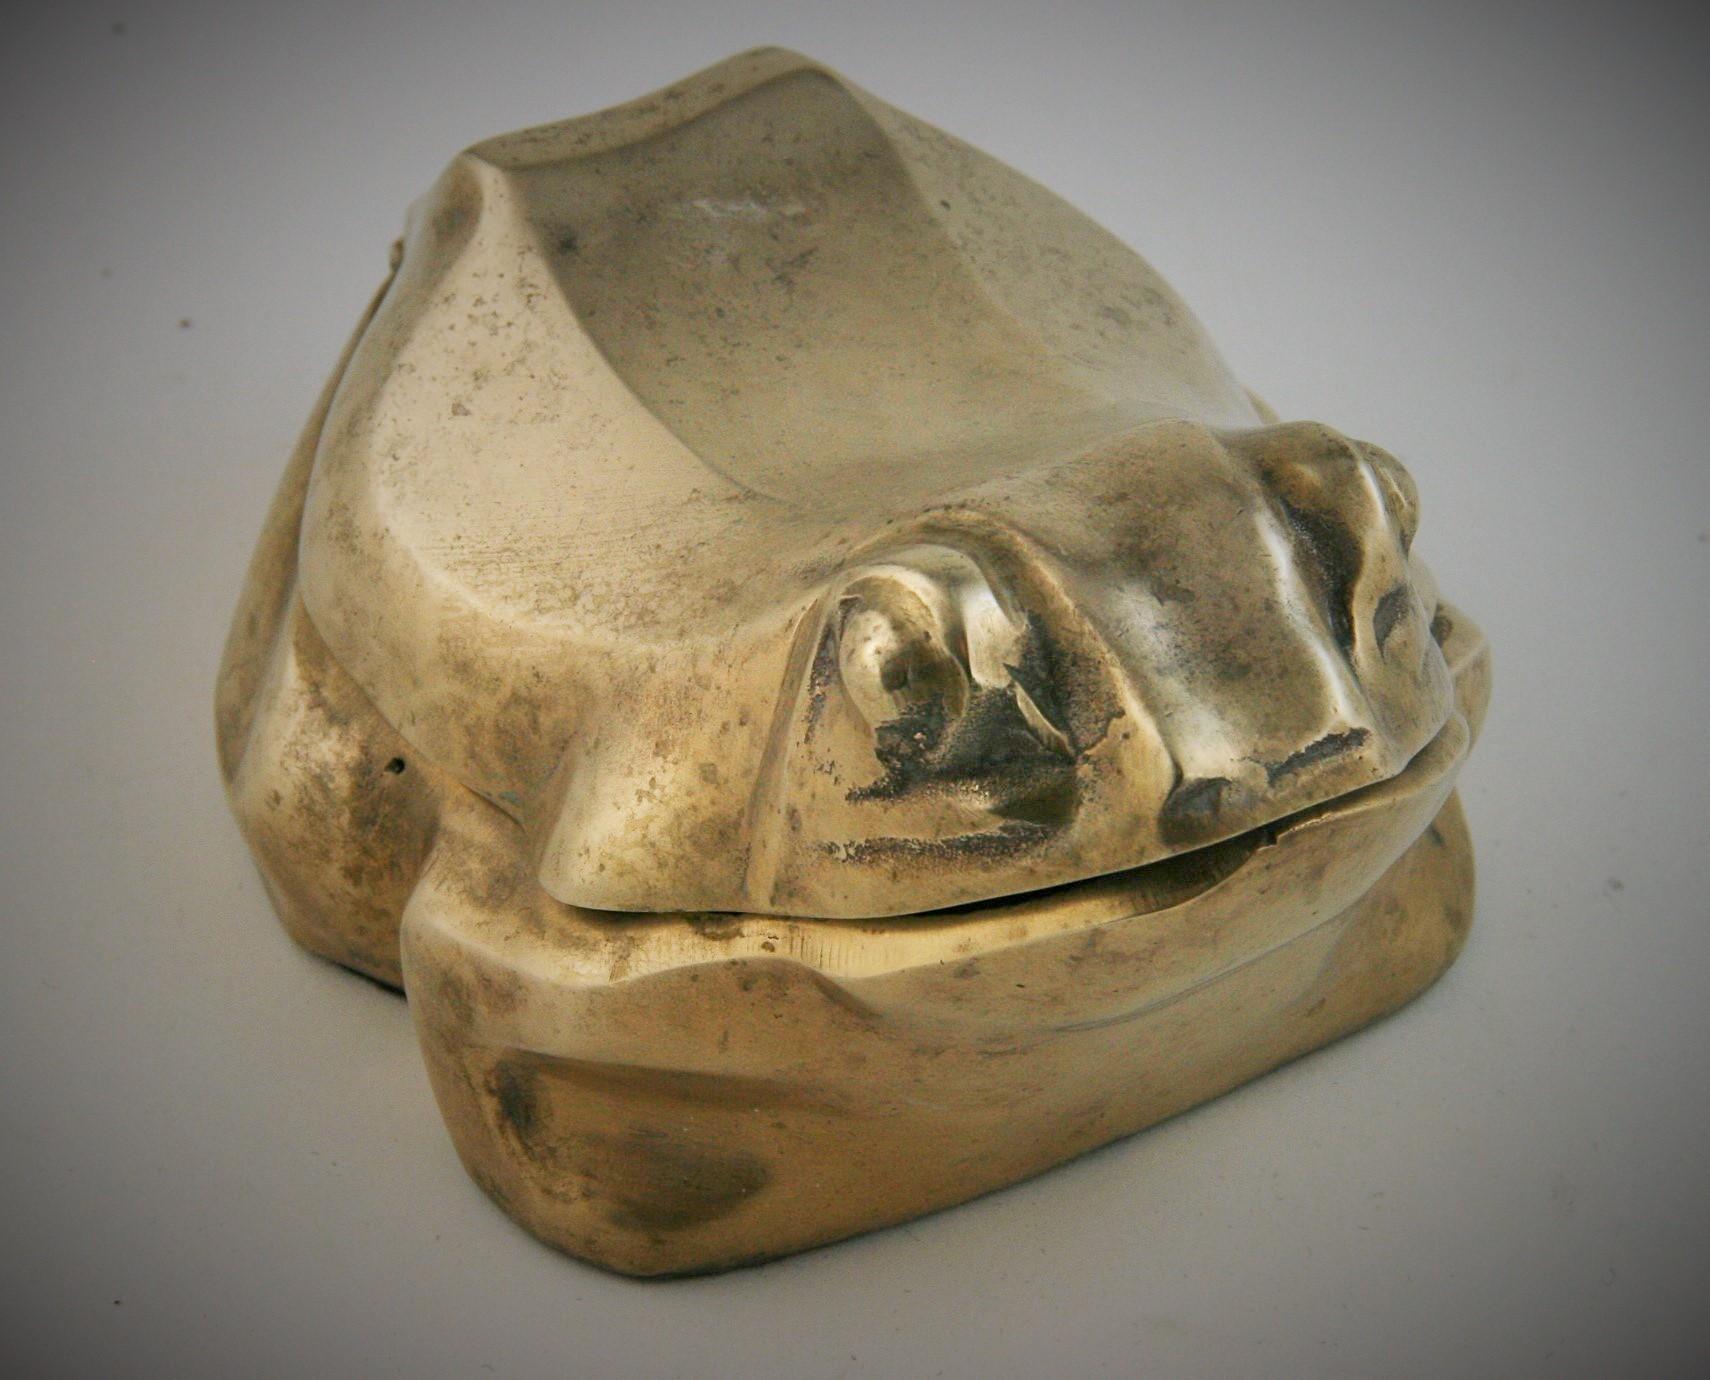 8-262 solid brass frog trinket box with black felt liner.